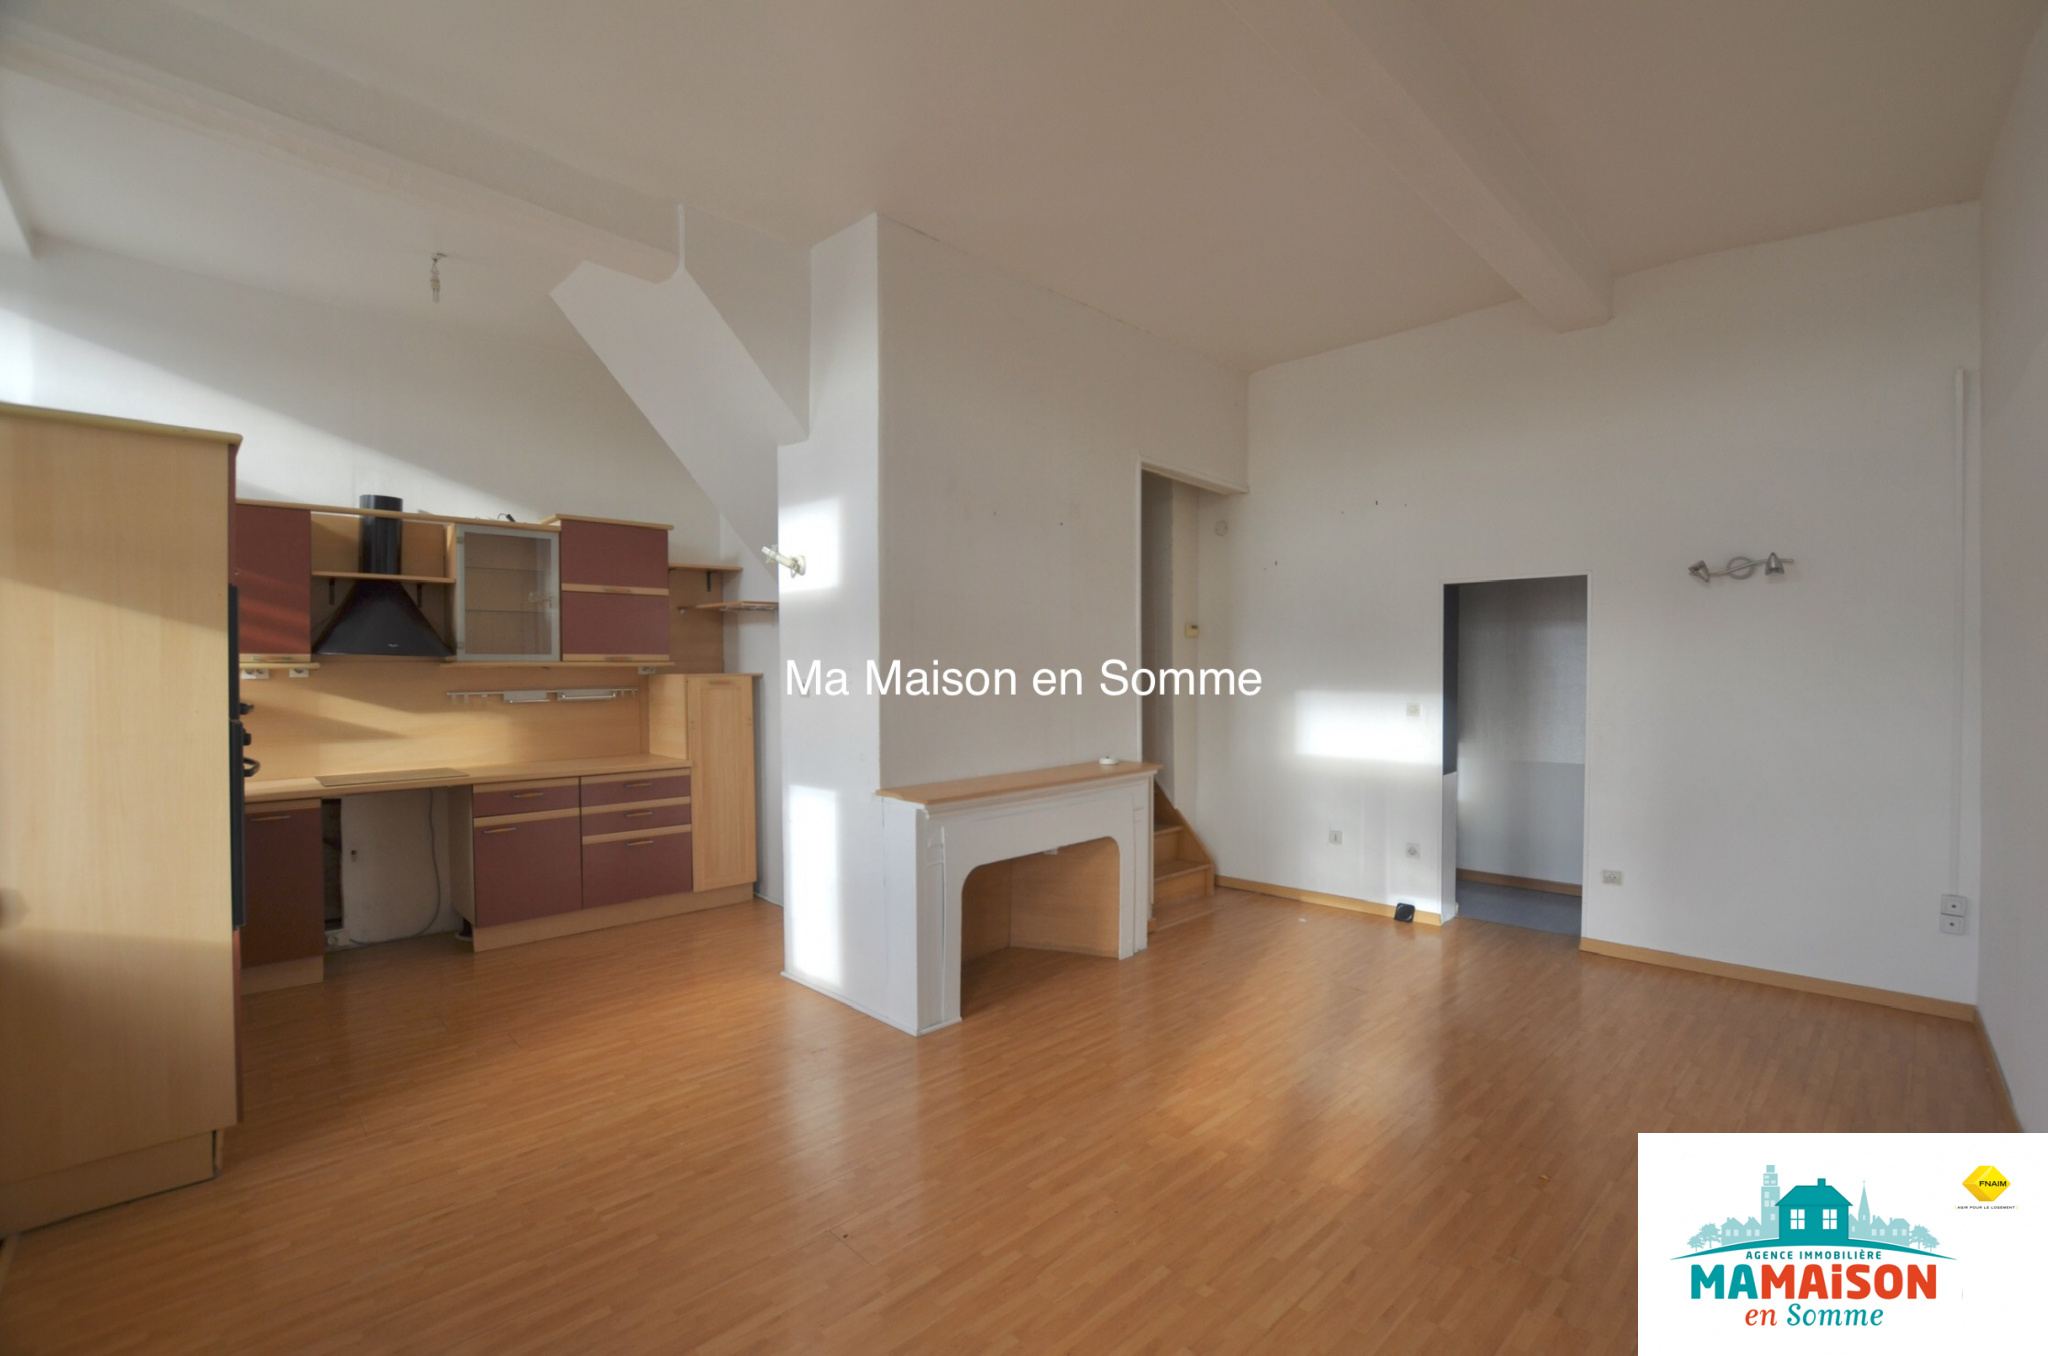 Immo80 – L'immobilier à Amiens et dans la Somme-Appartement Duplex à louer 650 € libre de suite